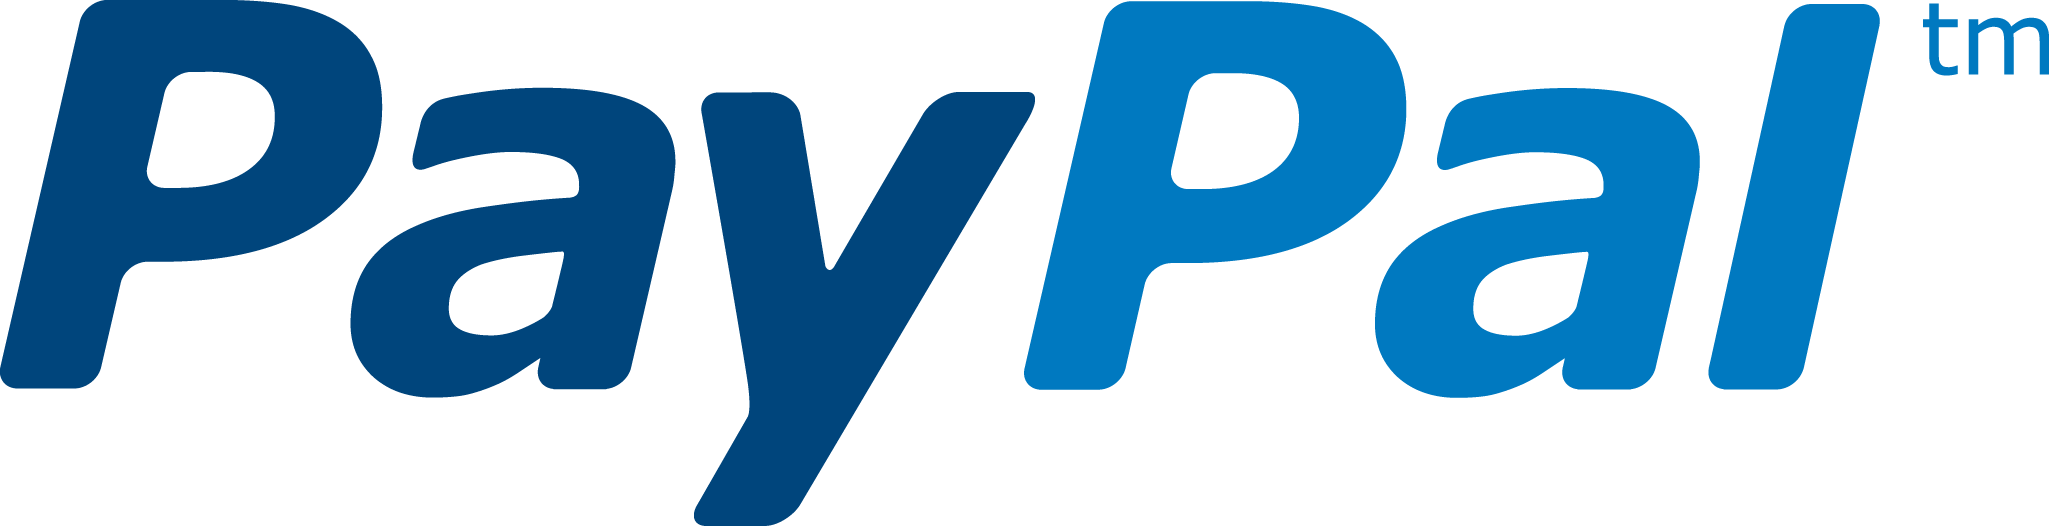 paypal logo png 2123